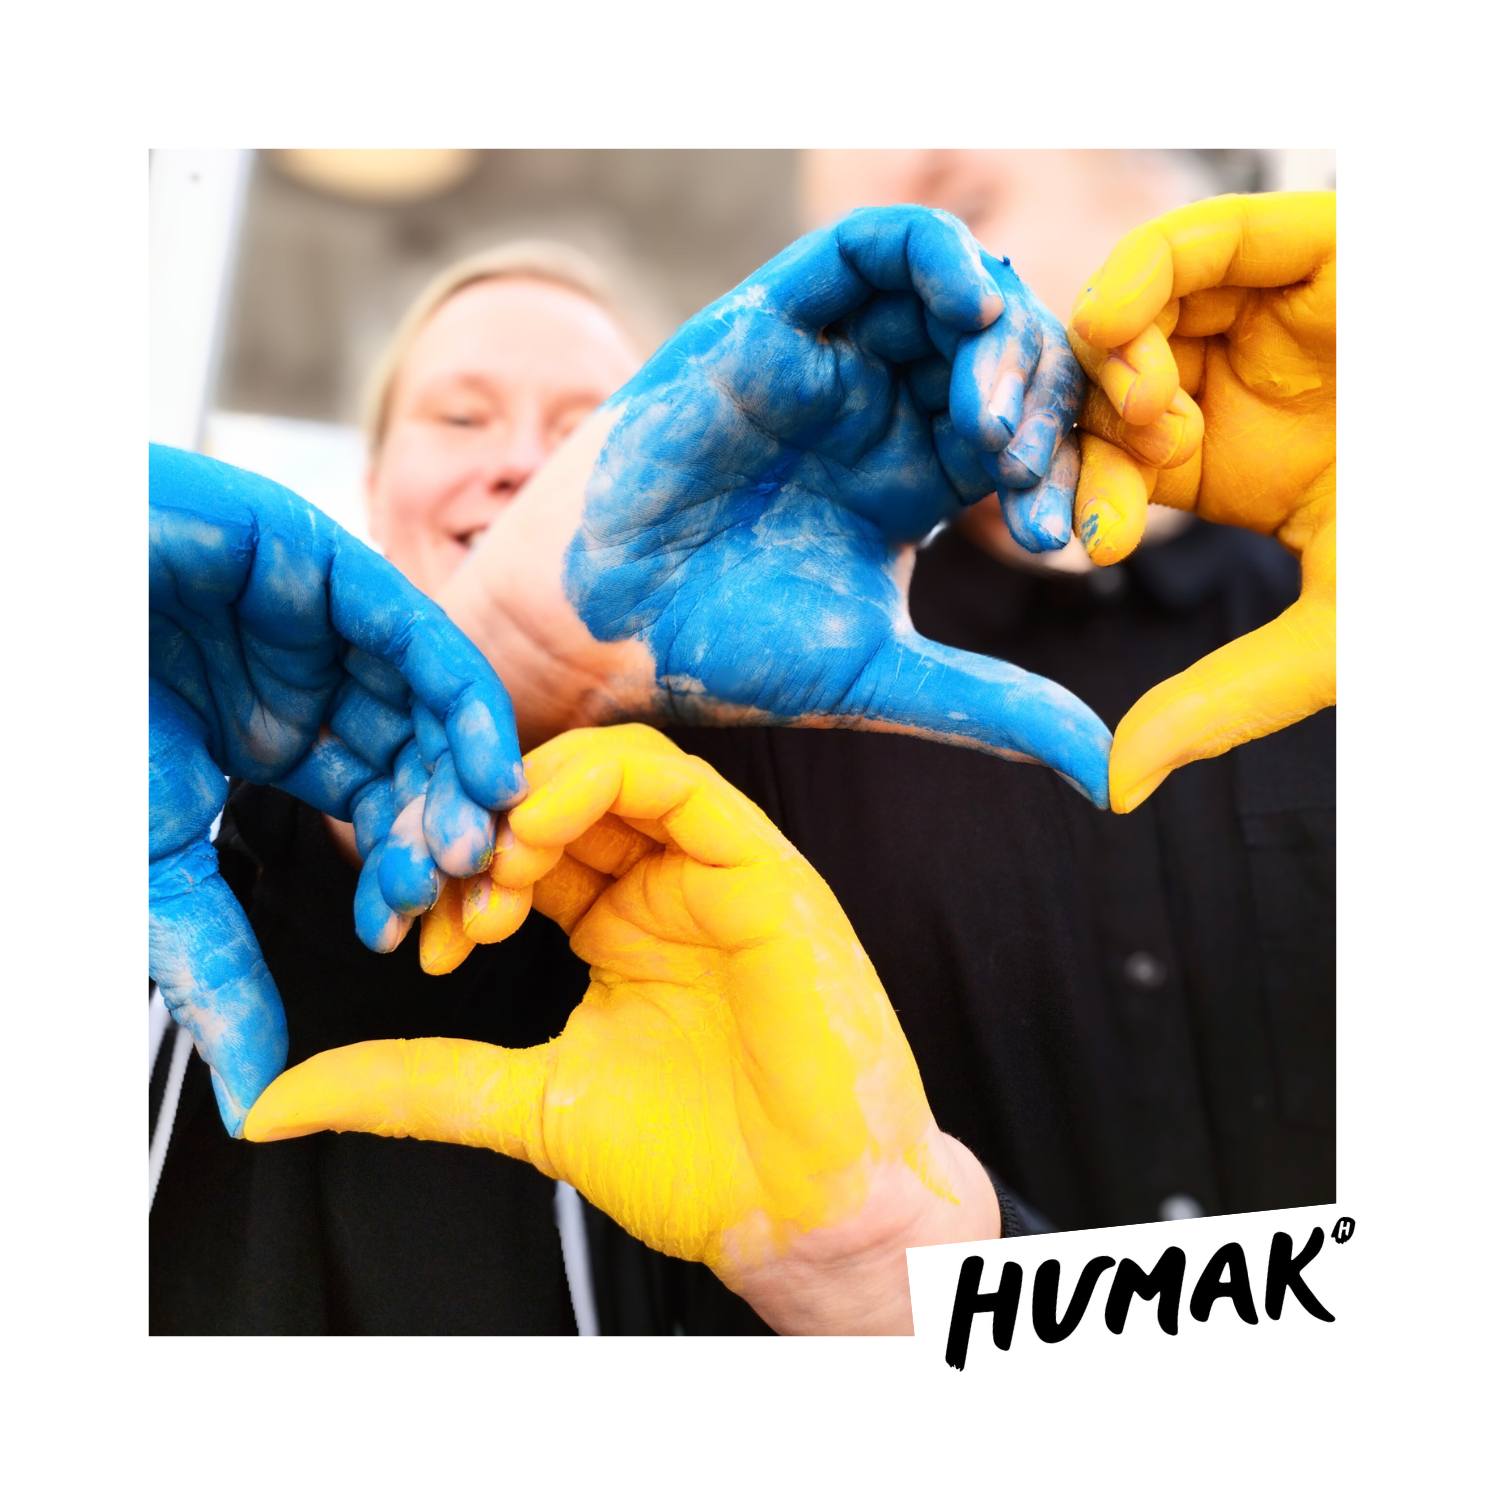 Kuvassa on kaksi käsiparia, jotka muodostavat sormilla sydämen. Kädet on maalattu Ukrainan lipun väreihin sinisiksi ja keltaisiksi.